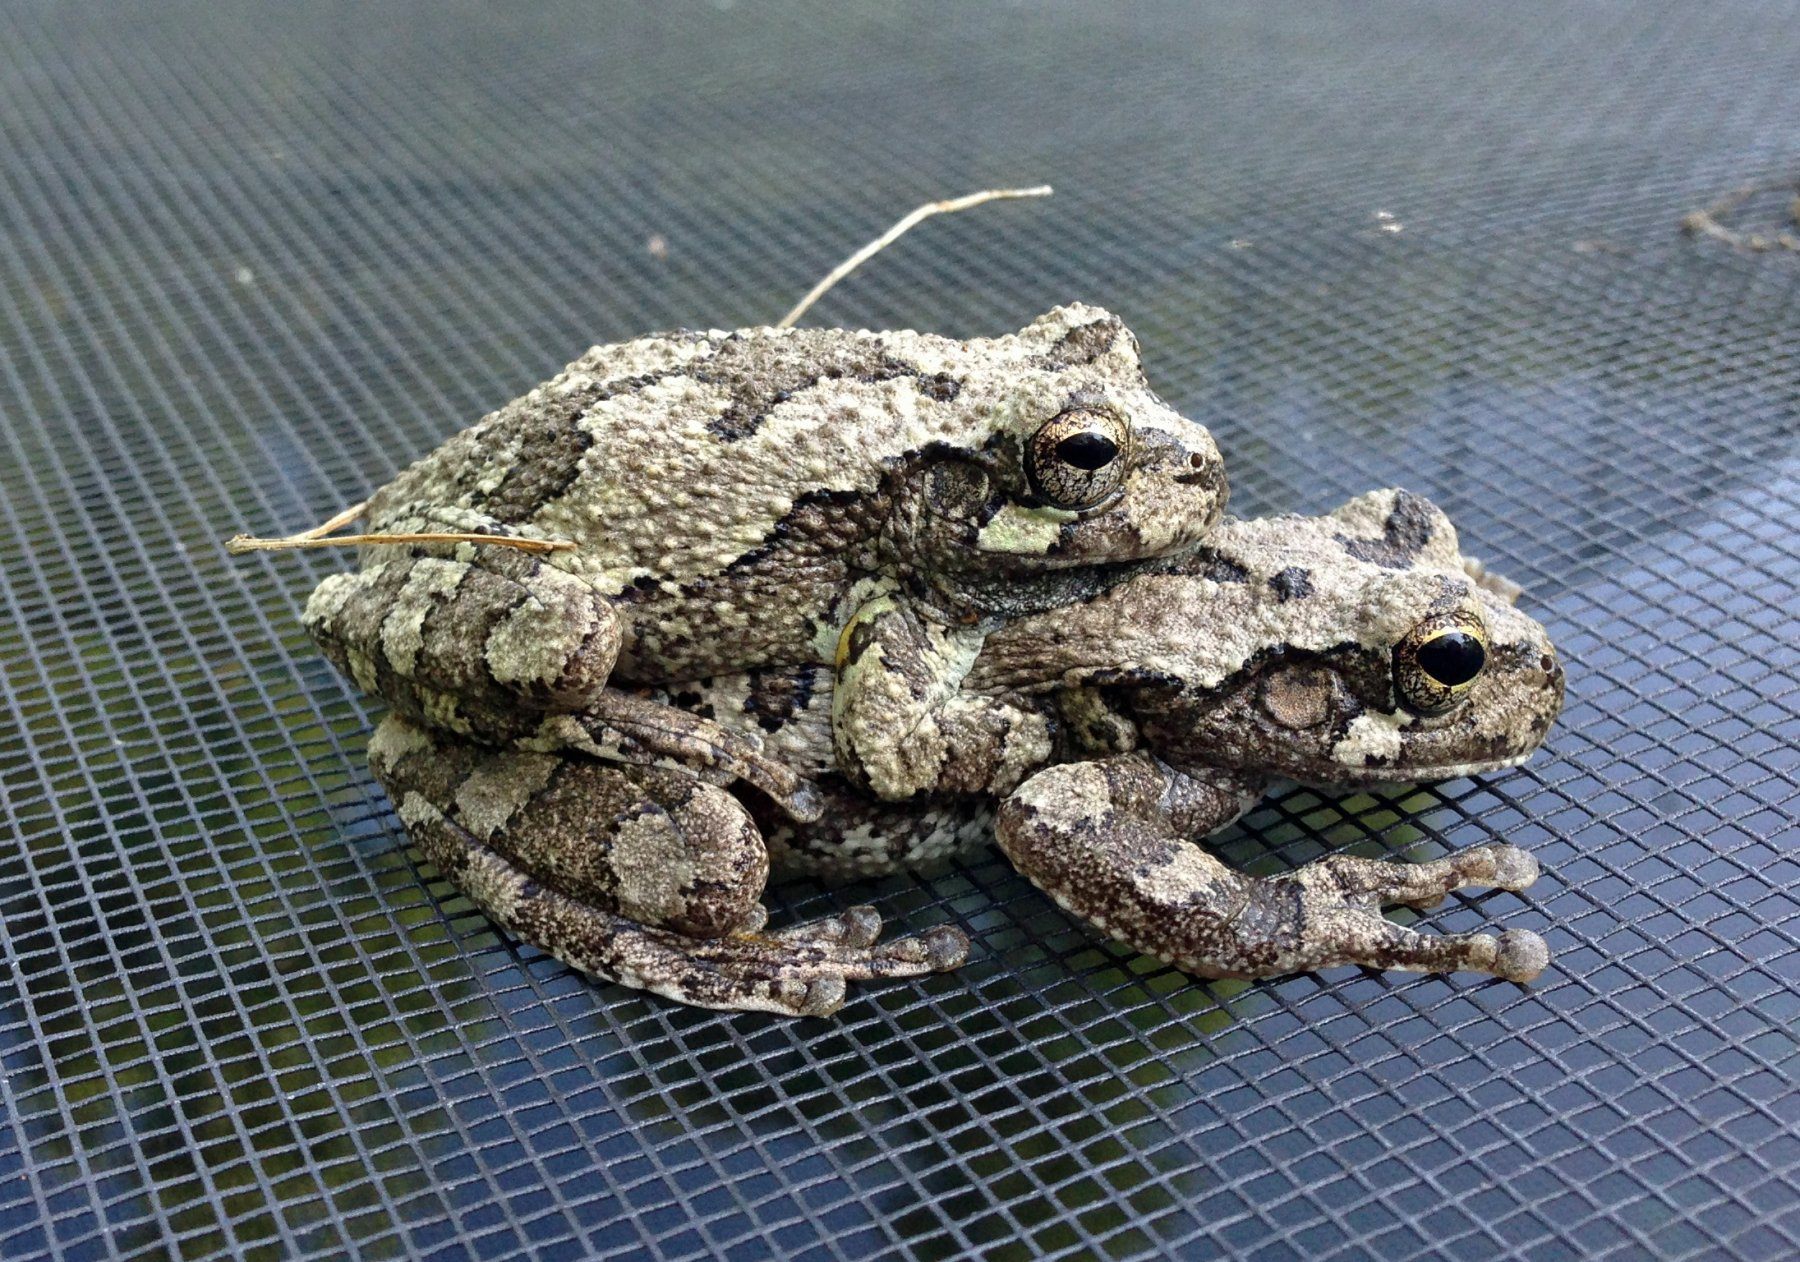 Развитие серой жабы